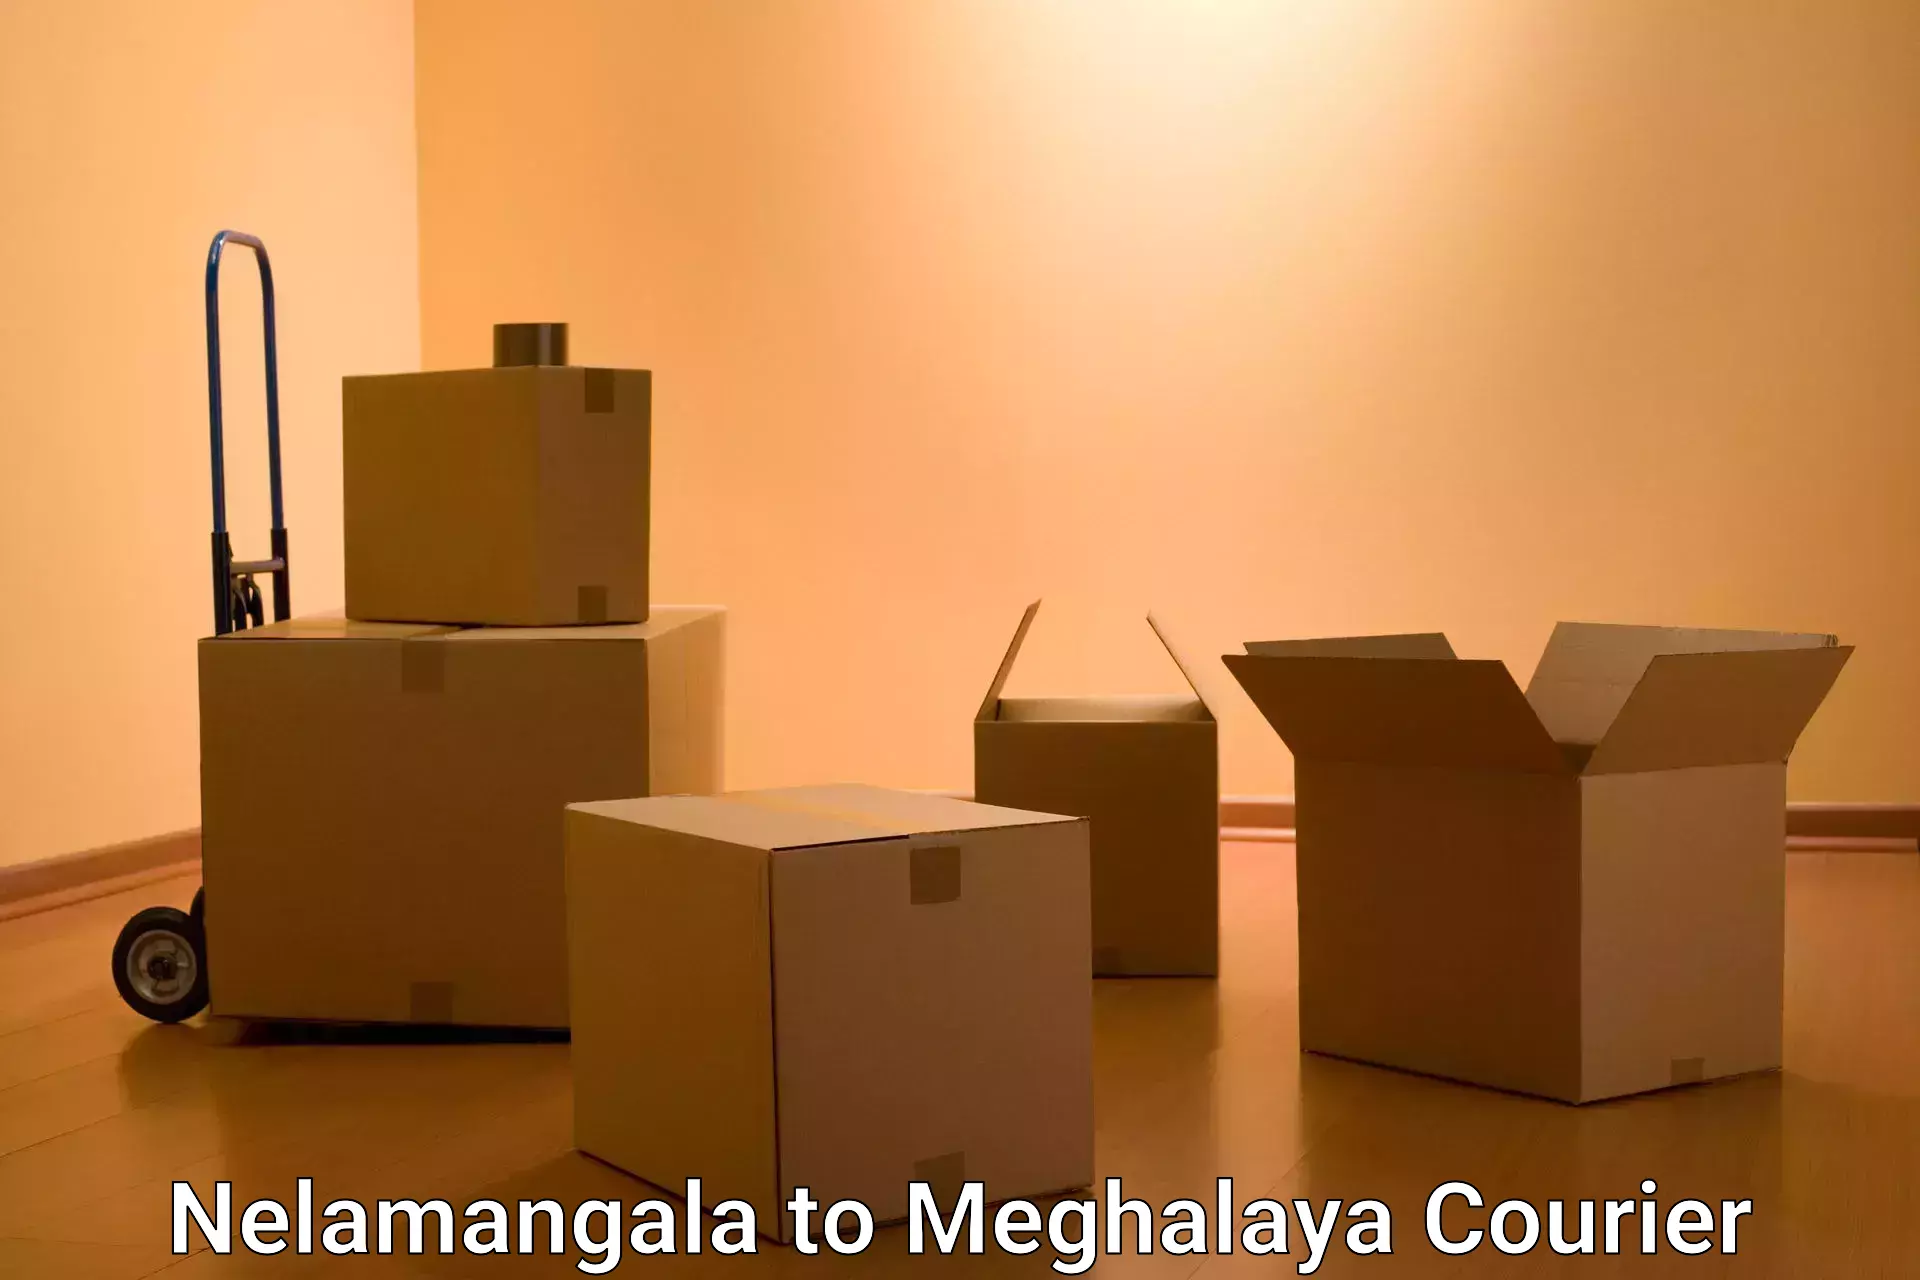 Modern courier technology Nelamangala to Meghalaya